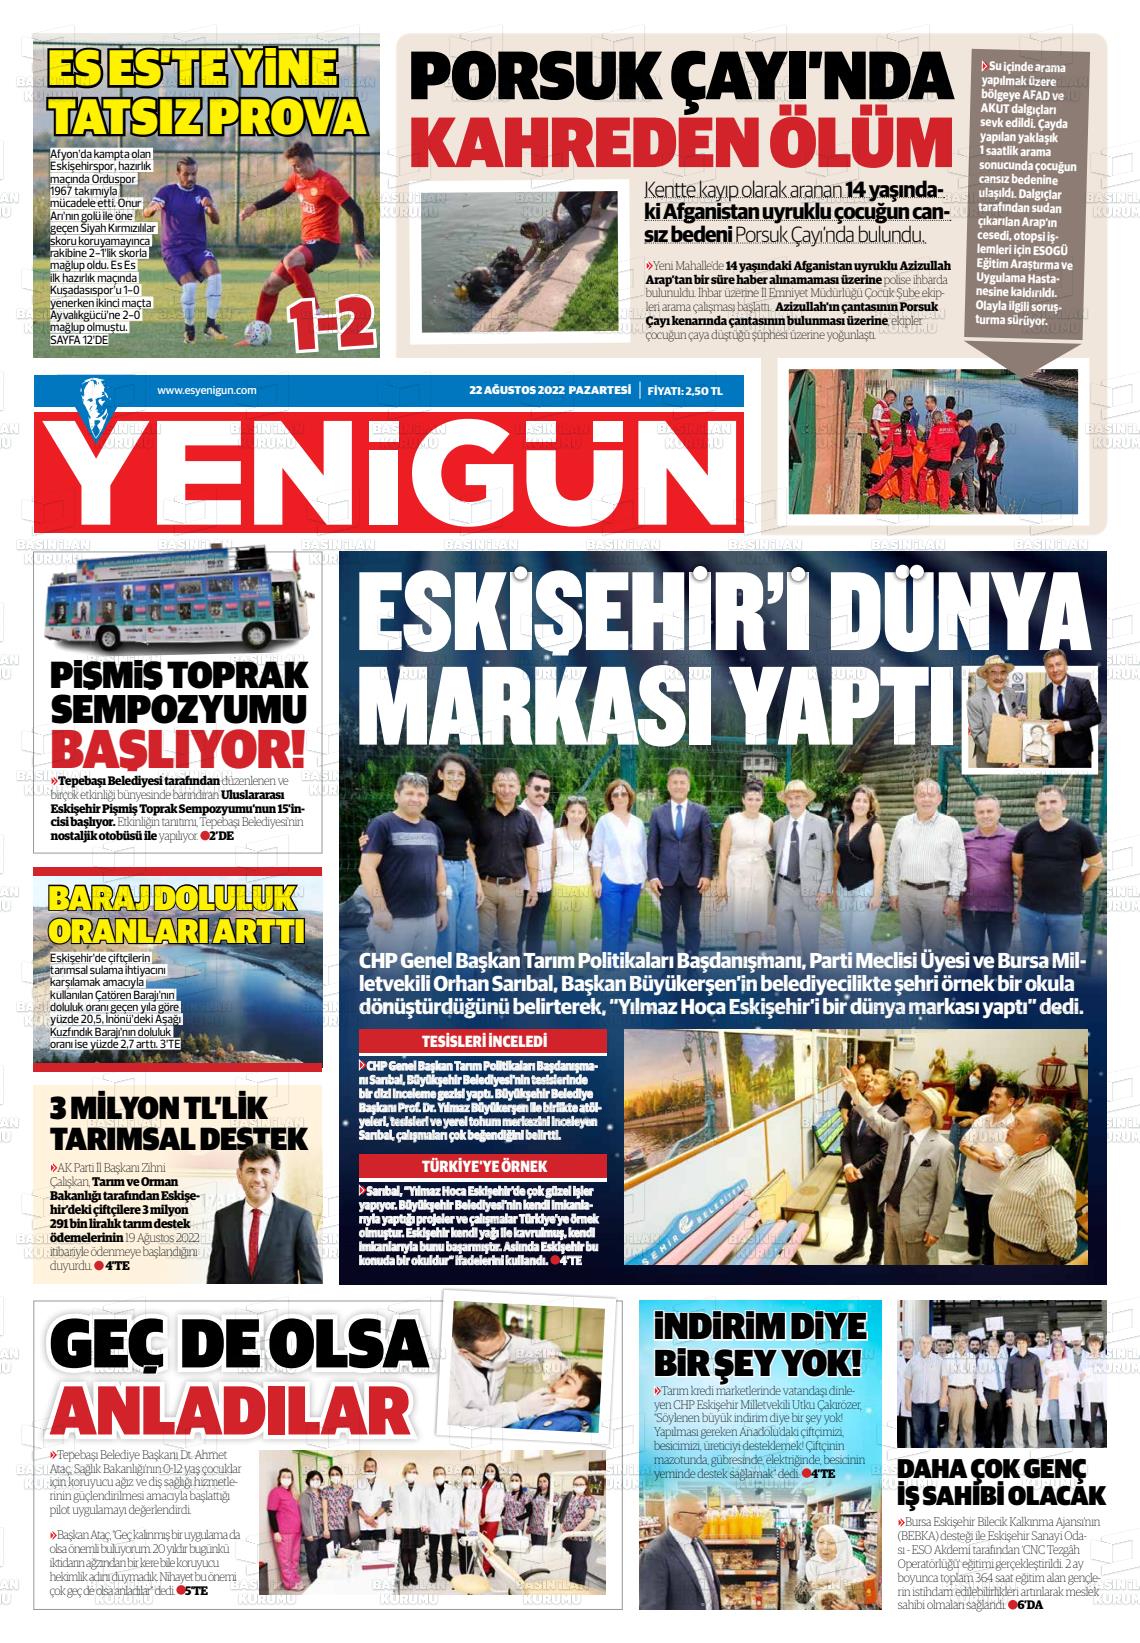 22 Ağustos 2022 Eskişehir Yeni Gün Gazete Manşeti